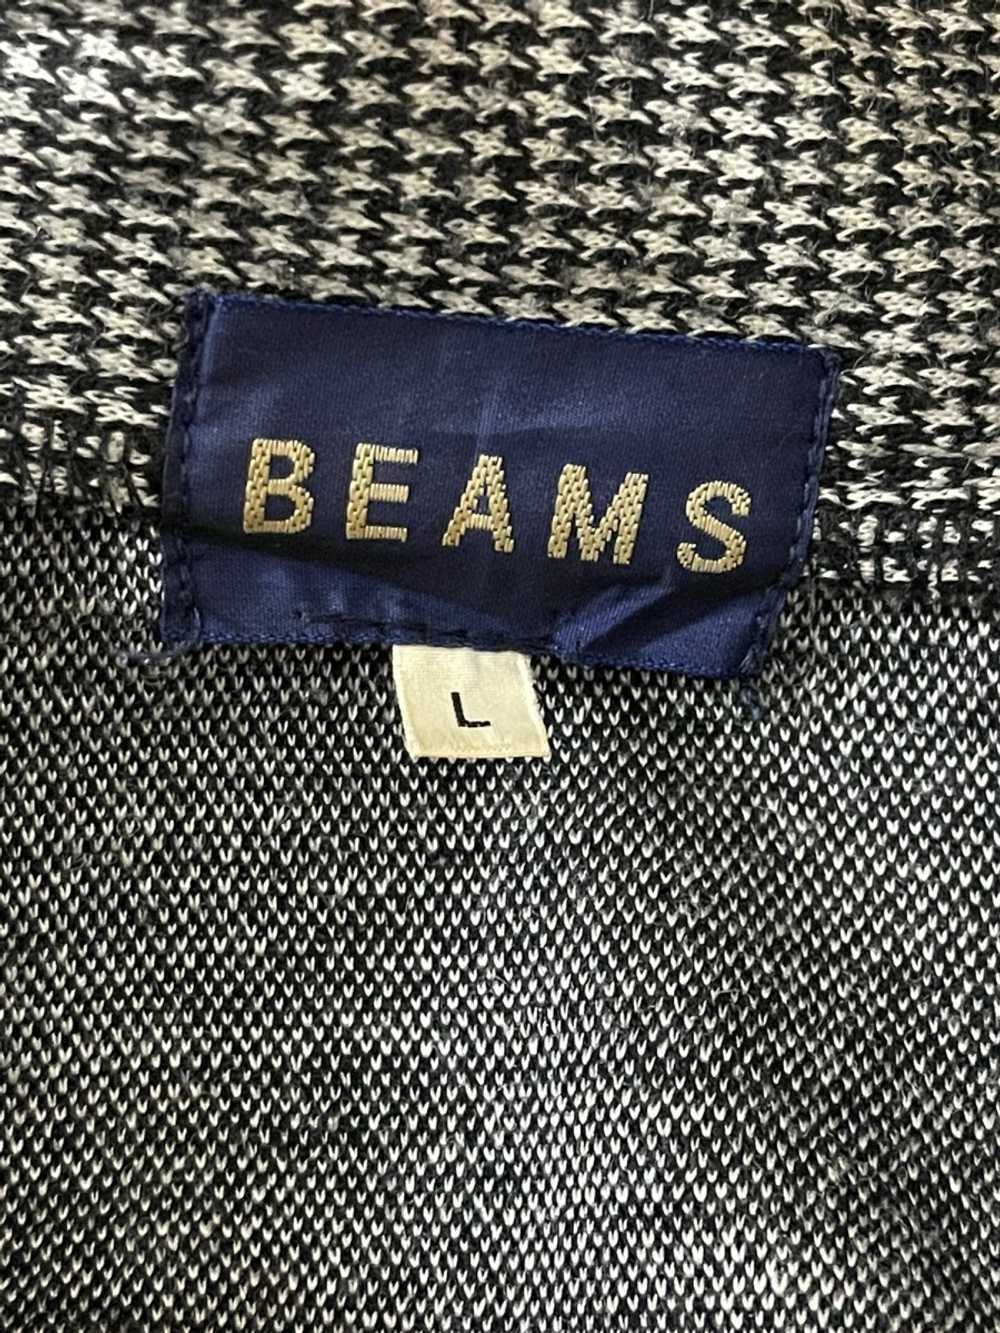 BEAMS PLUS Vintage Beams Jacket - image 3